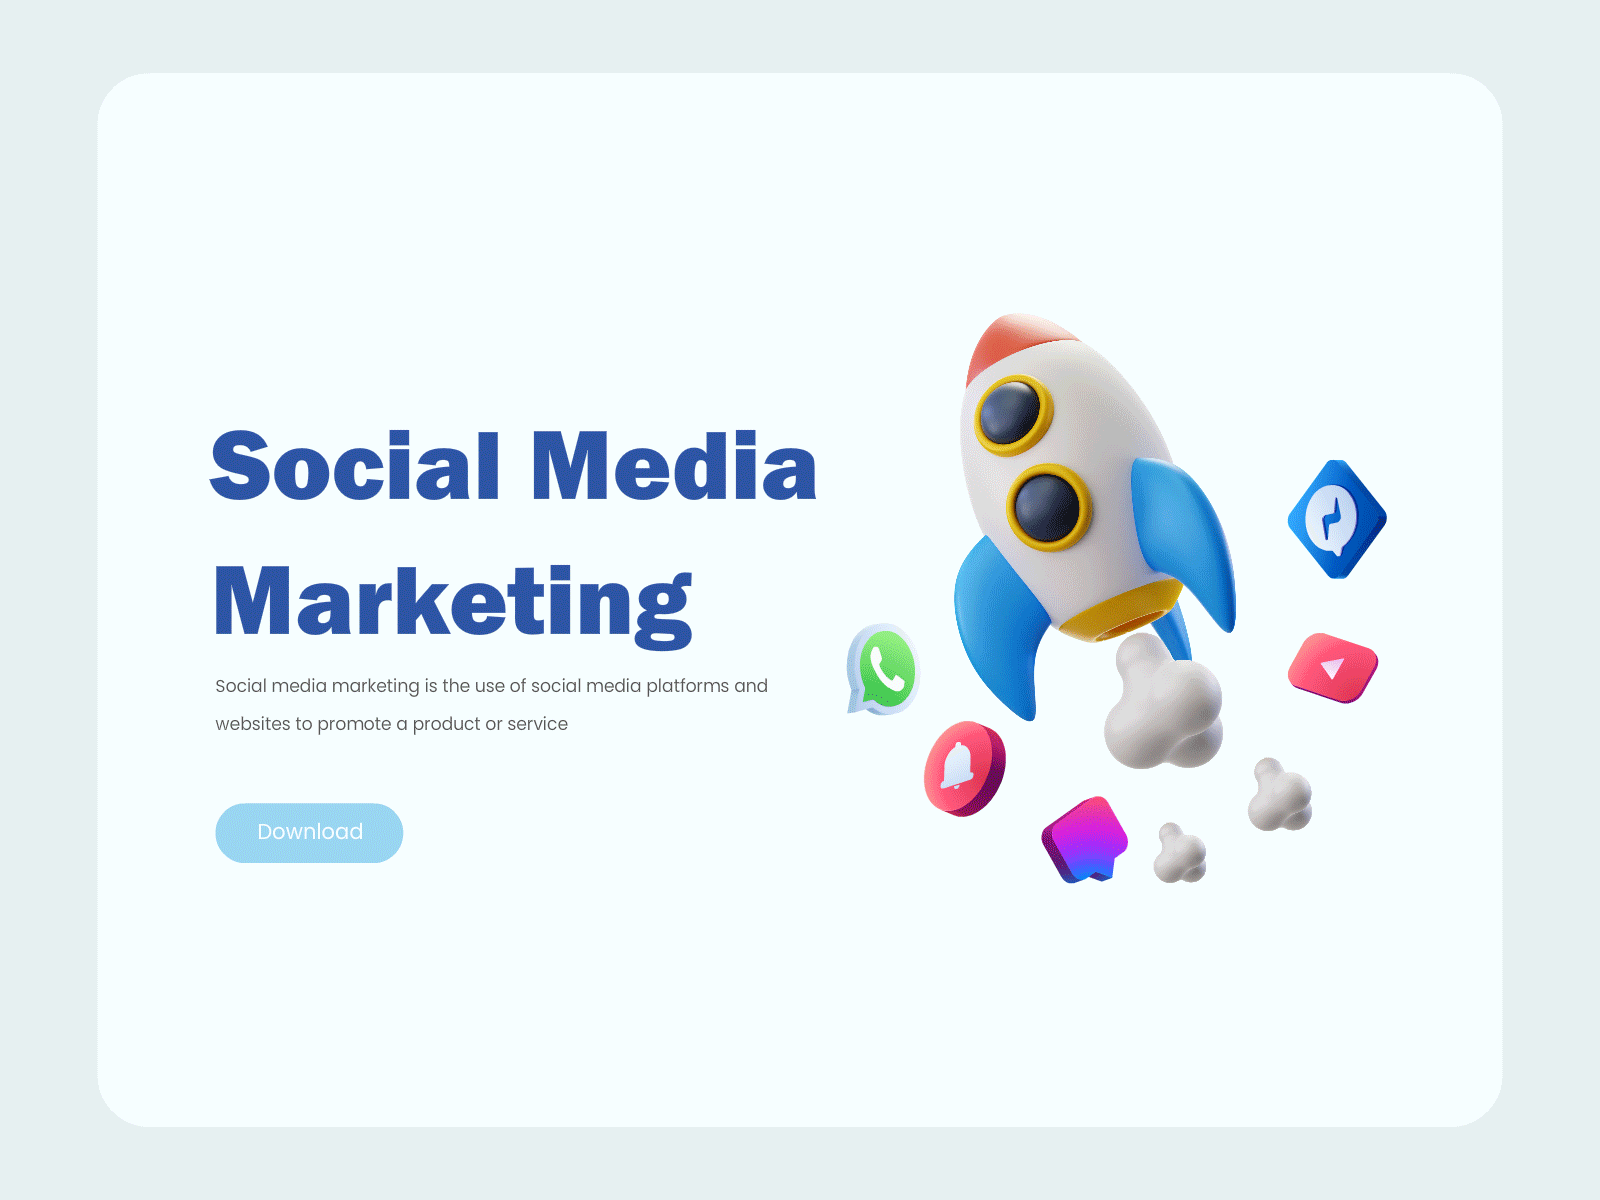 Social Media Marketing design marketing media social social media